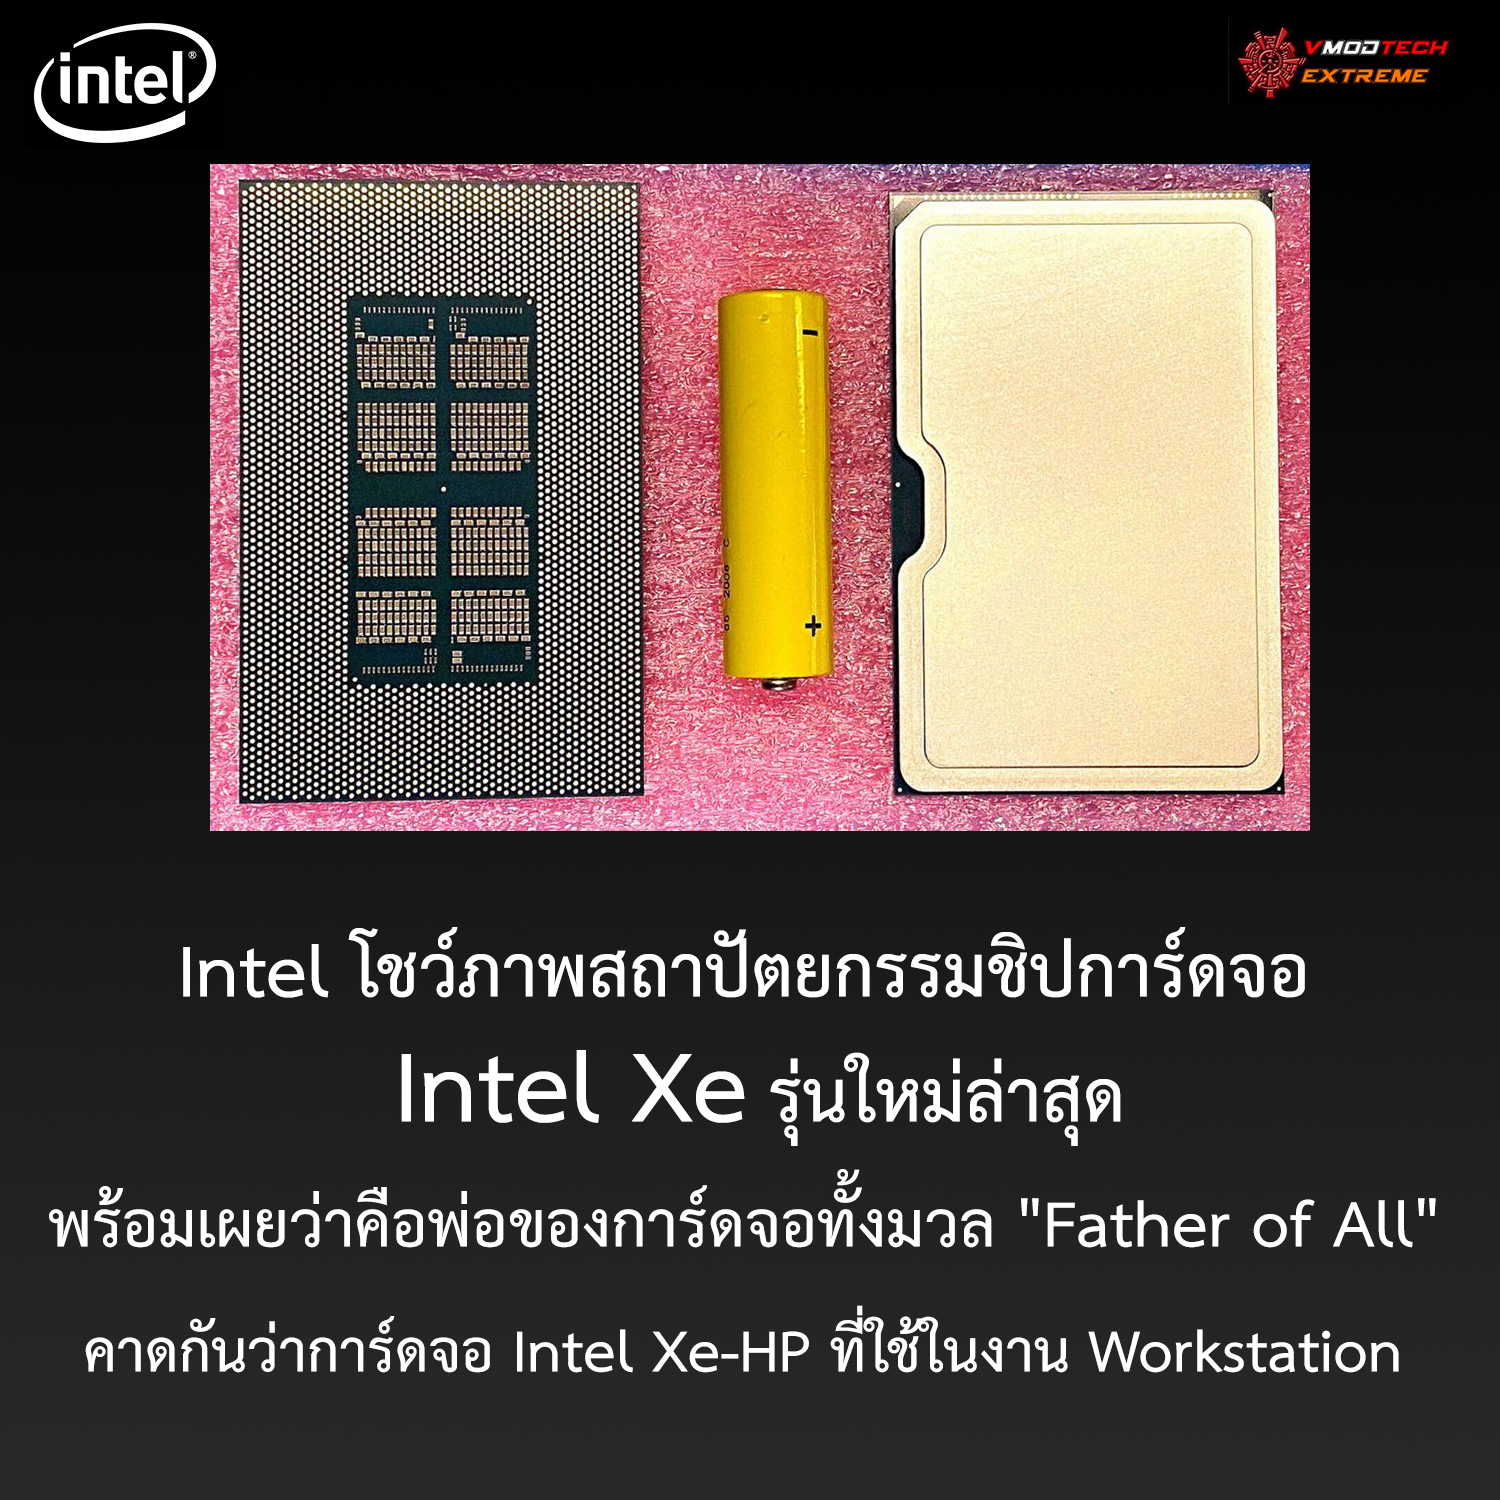 intel xe hp father of all Intel โชว์ภาพสถาปัตยกรรมชิปการ์ดจอ Intel Xe รุ่นใหม่ล่าสุดพร้อมเผยว่าคือพ่อของการ์ดจอทั้งมวล Father of All  